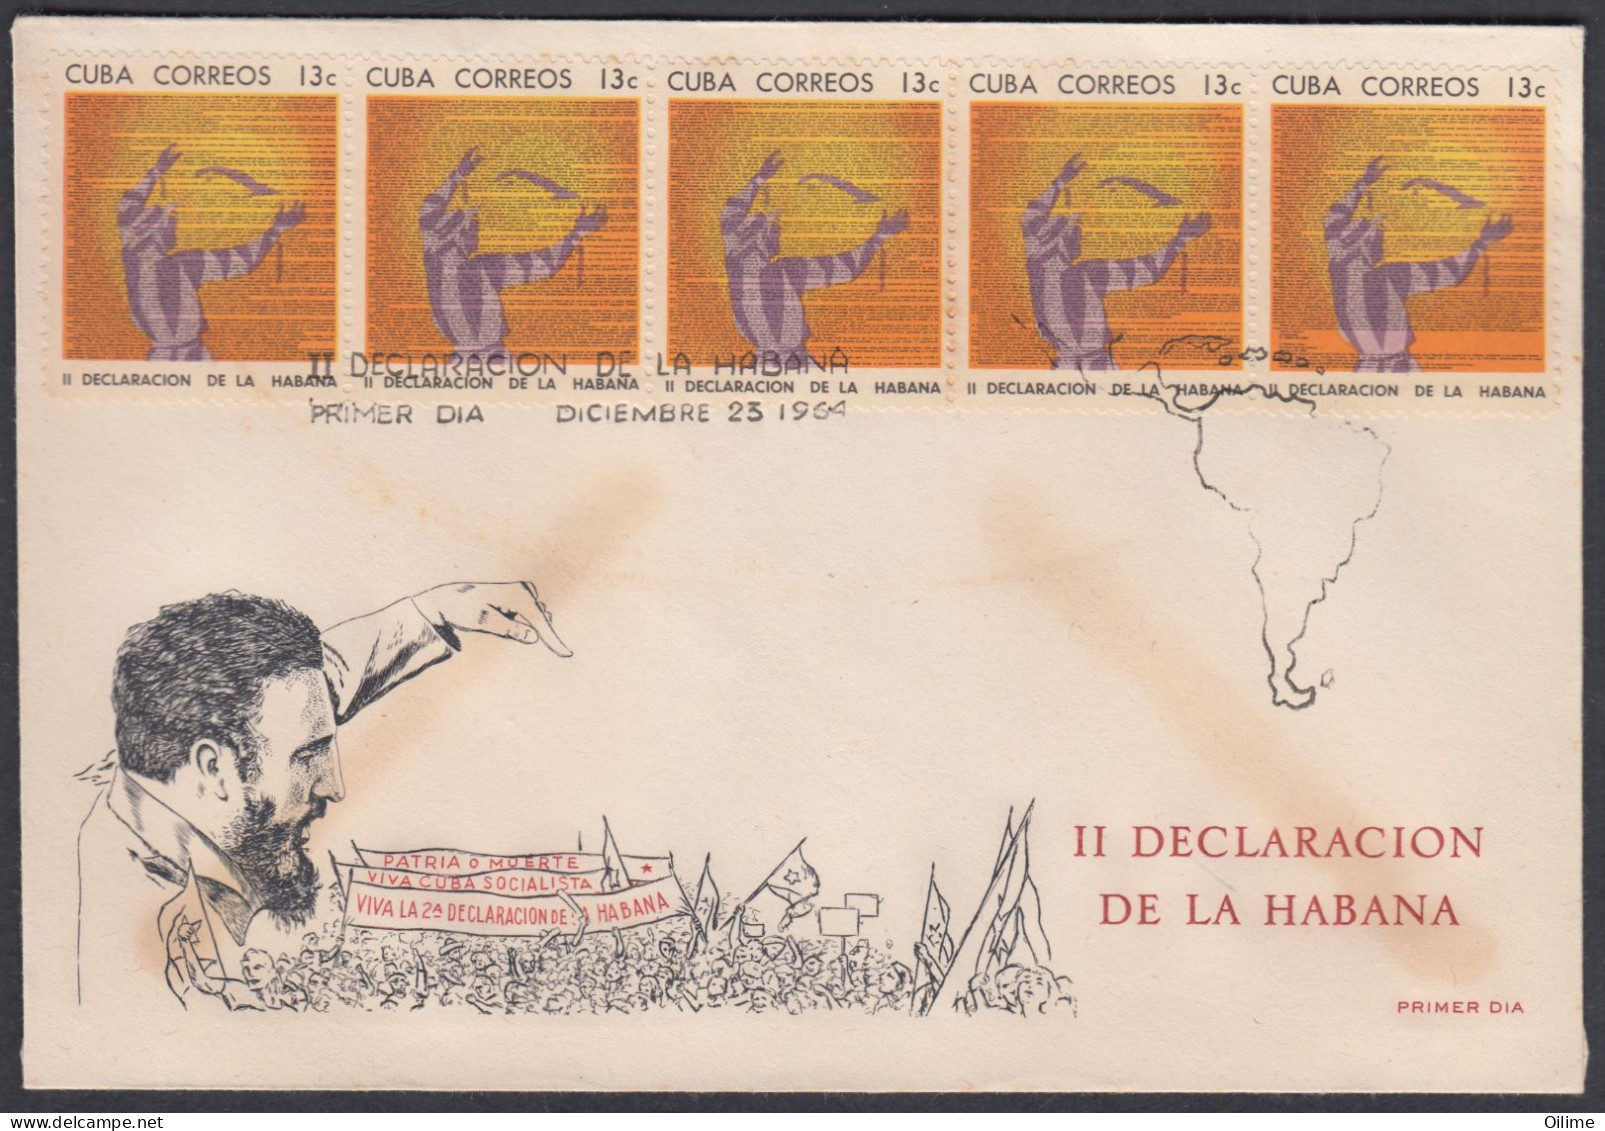 FDC CUBA 1964. II DECLARACIÓN DE LA HABANA. FIDEL CASTRO. EDIFIL 1152/61. - FDC